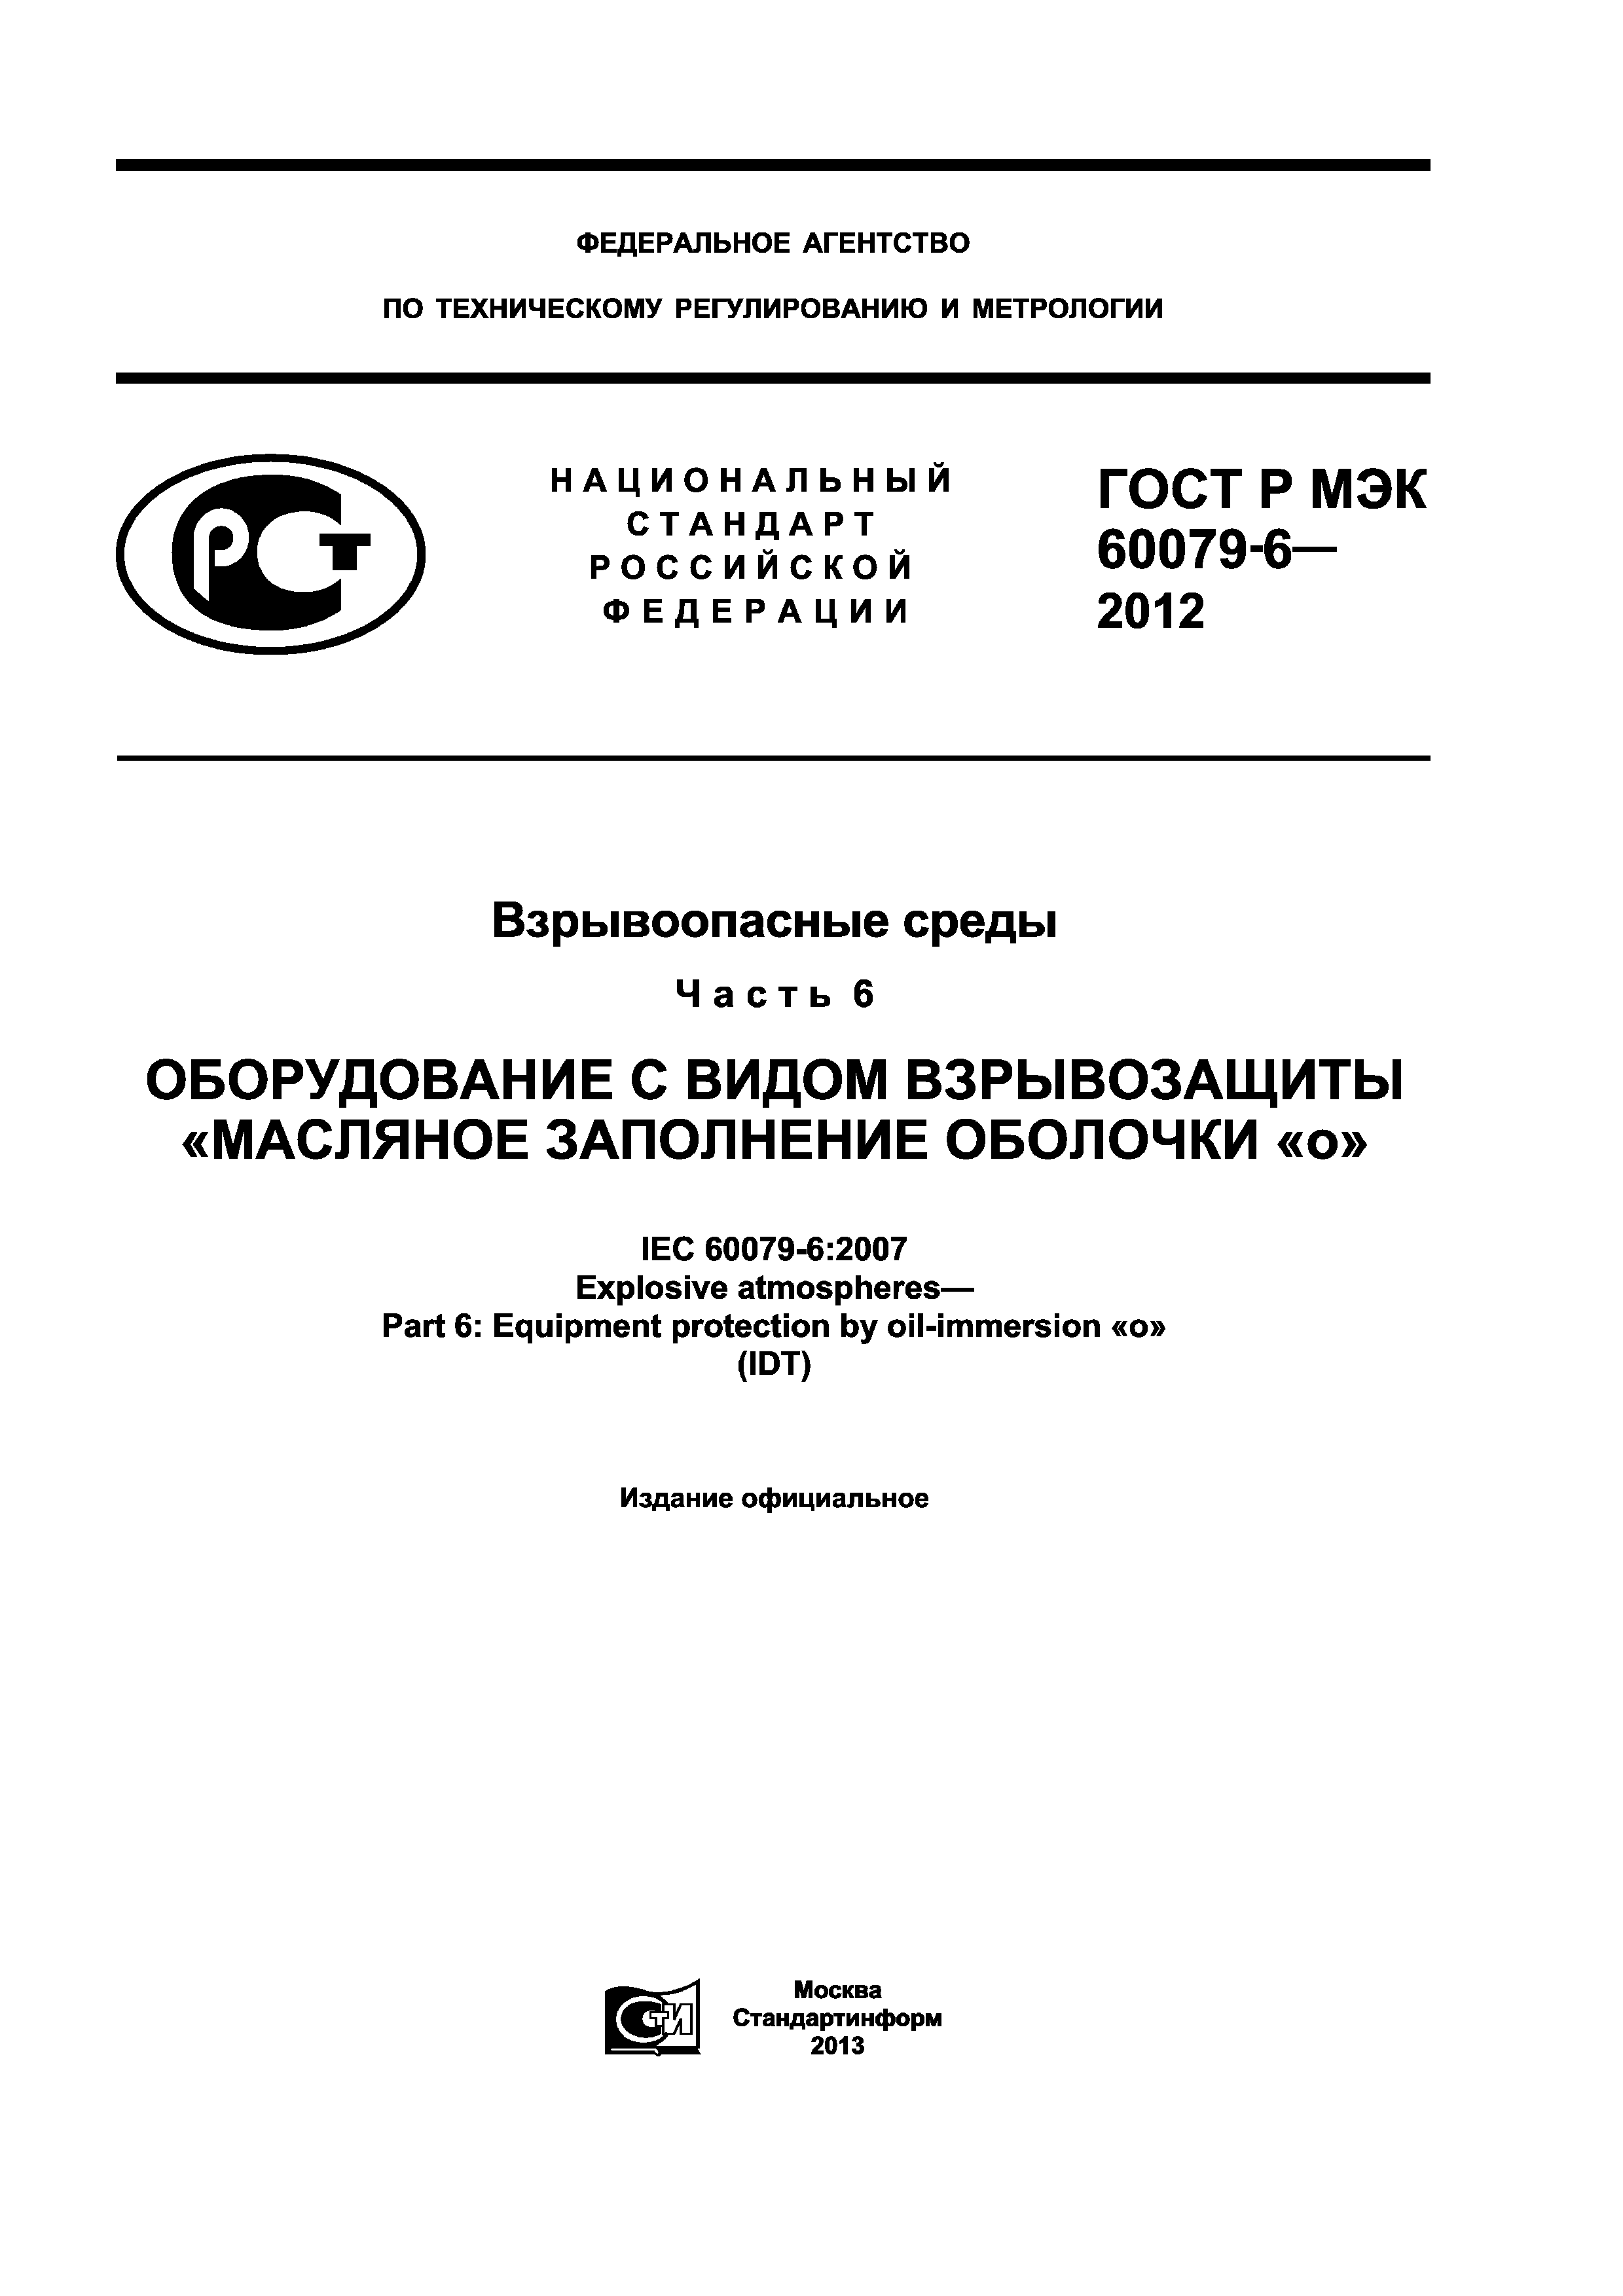 ГОСТ Р МЭК 60079-6-2012